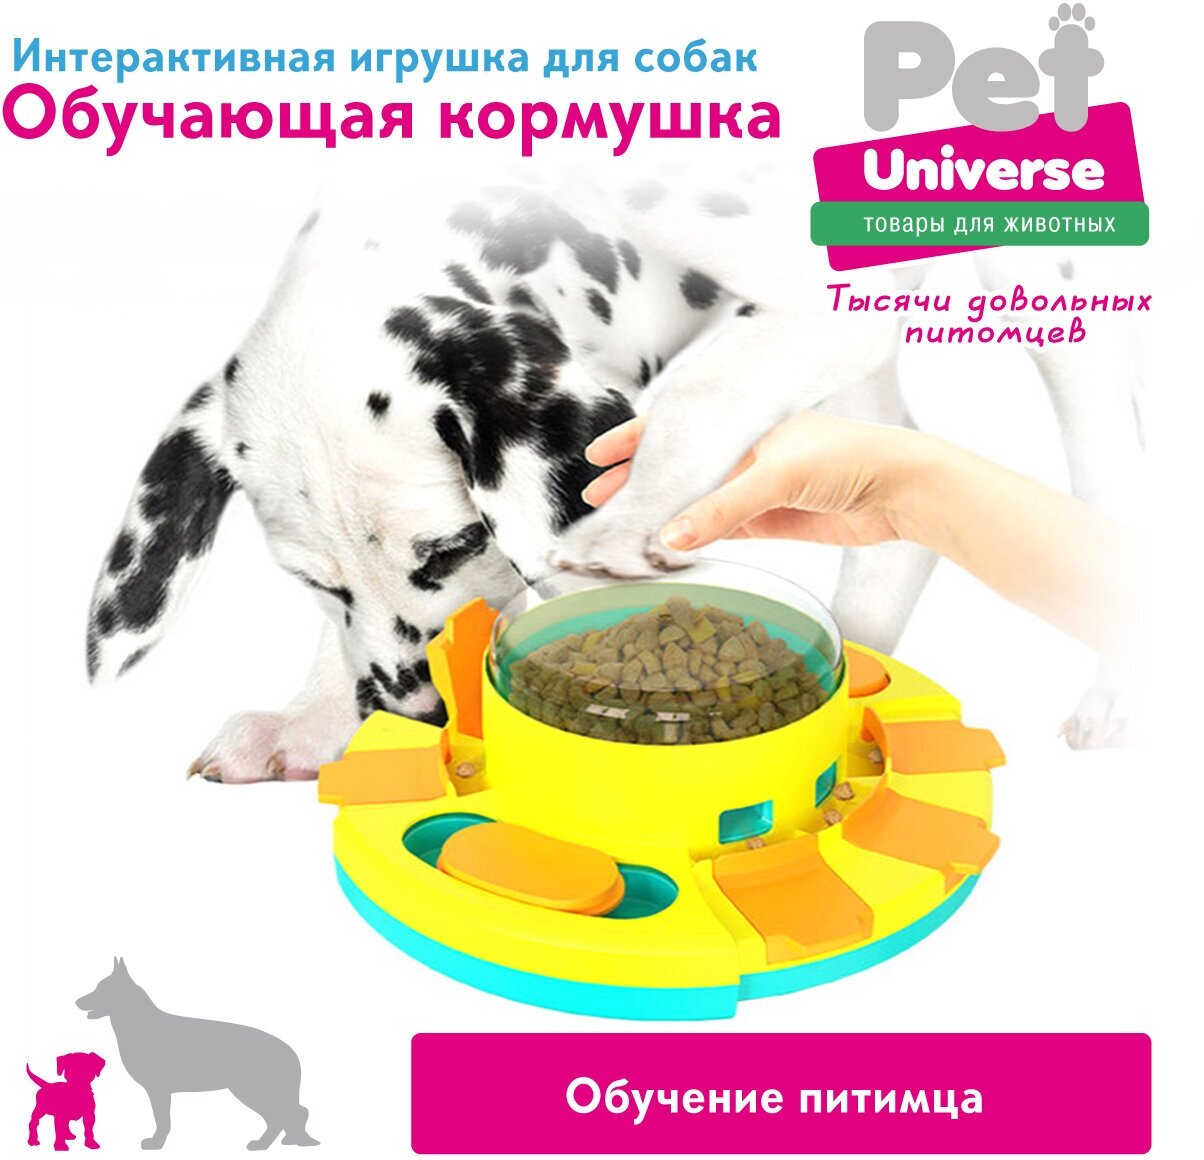 Развивающая игрушка для собак и кошек Pet Universe головоломка интерактивная обучающая кормушка дозатор для медленной еды и лакомств IQр для медленной еды и лакомств IQ